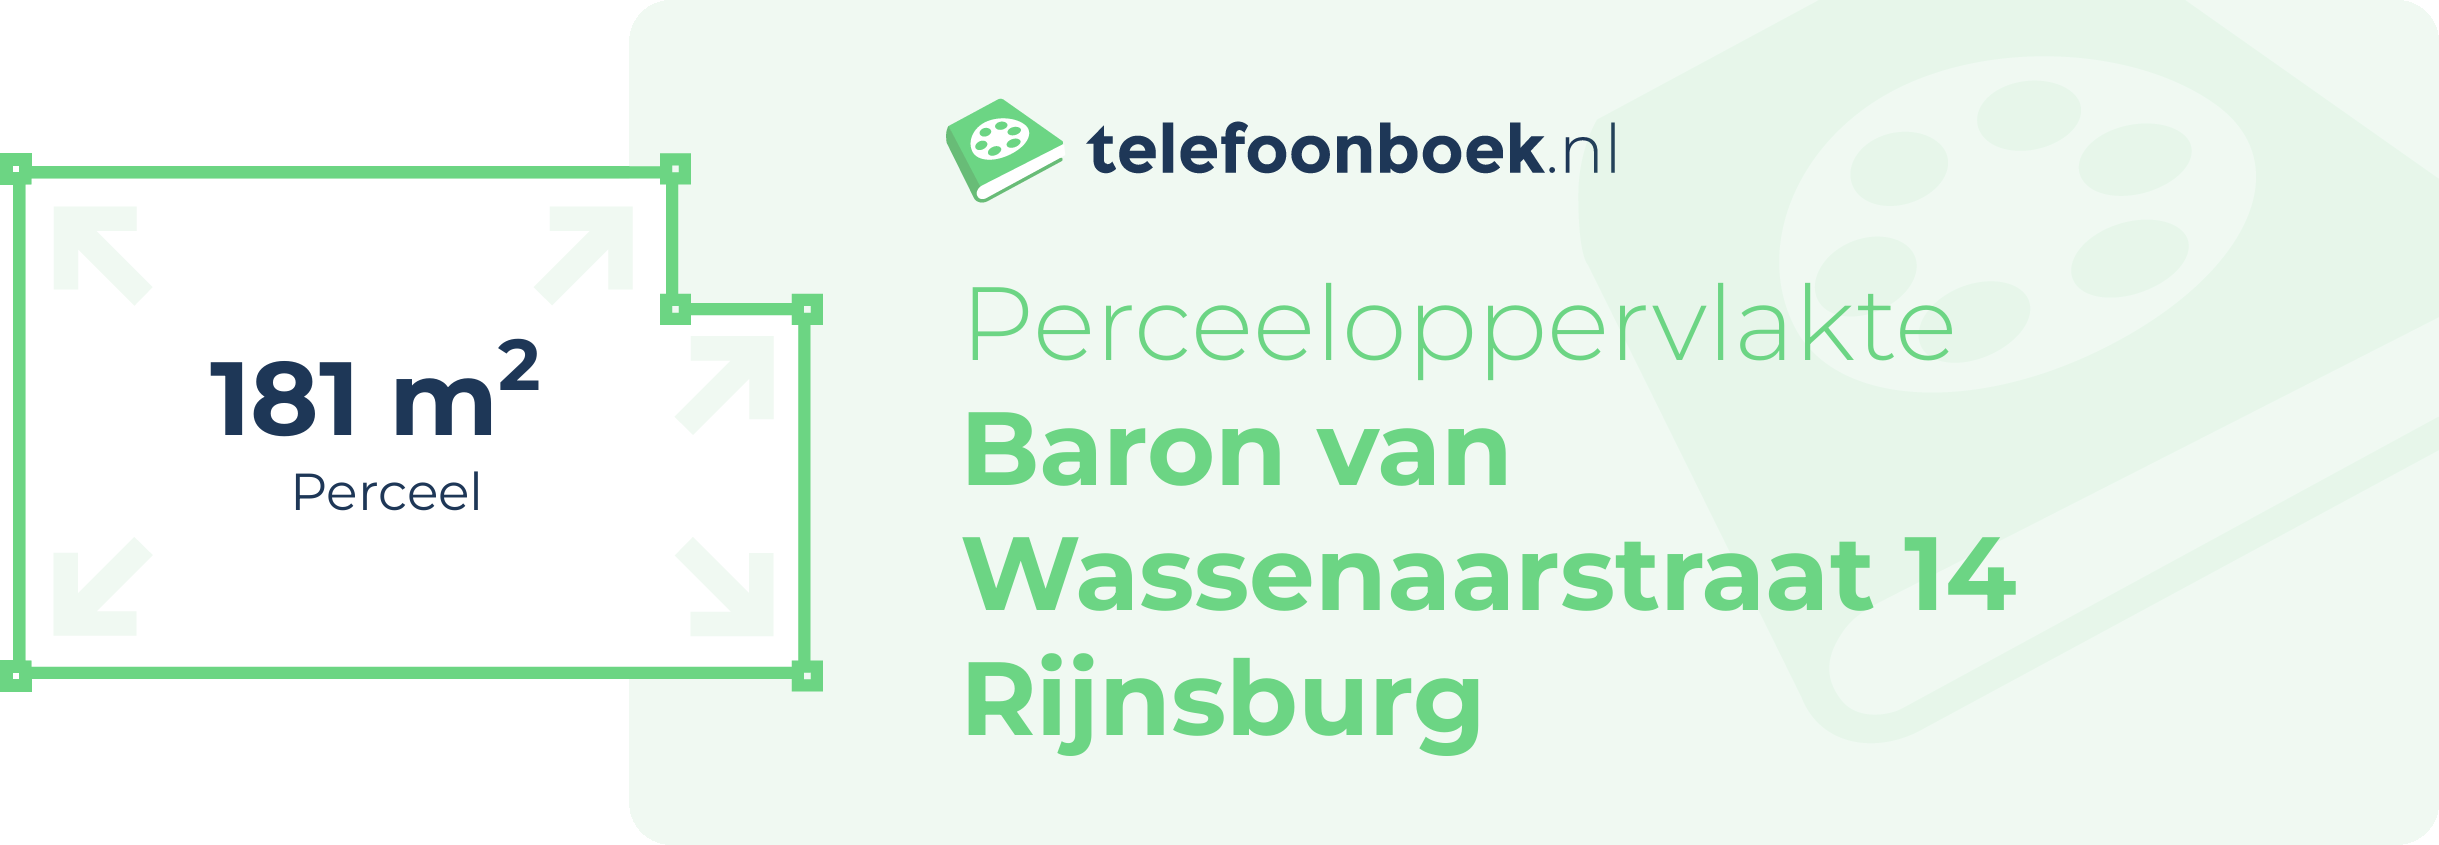 Perceeloppervlakte Baron Van Wassenaarstraat 14 Rijnsburg